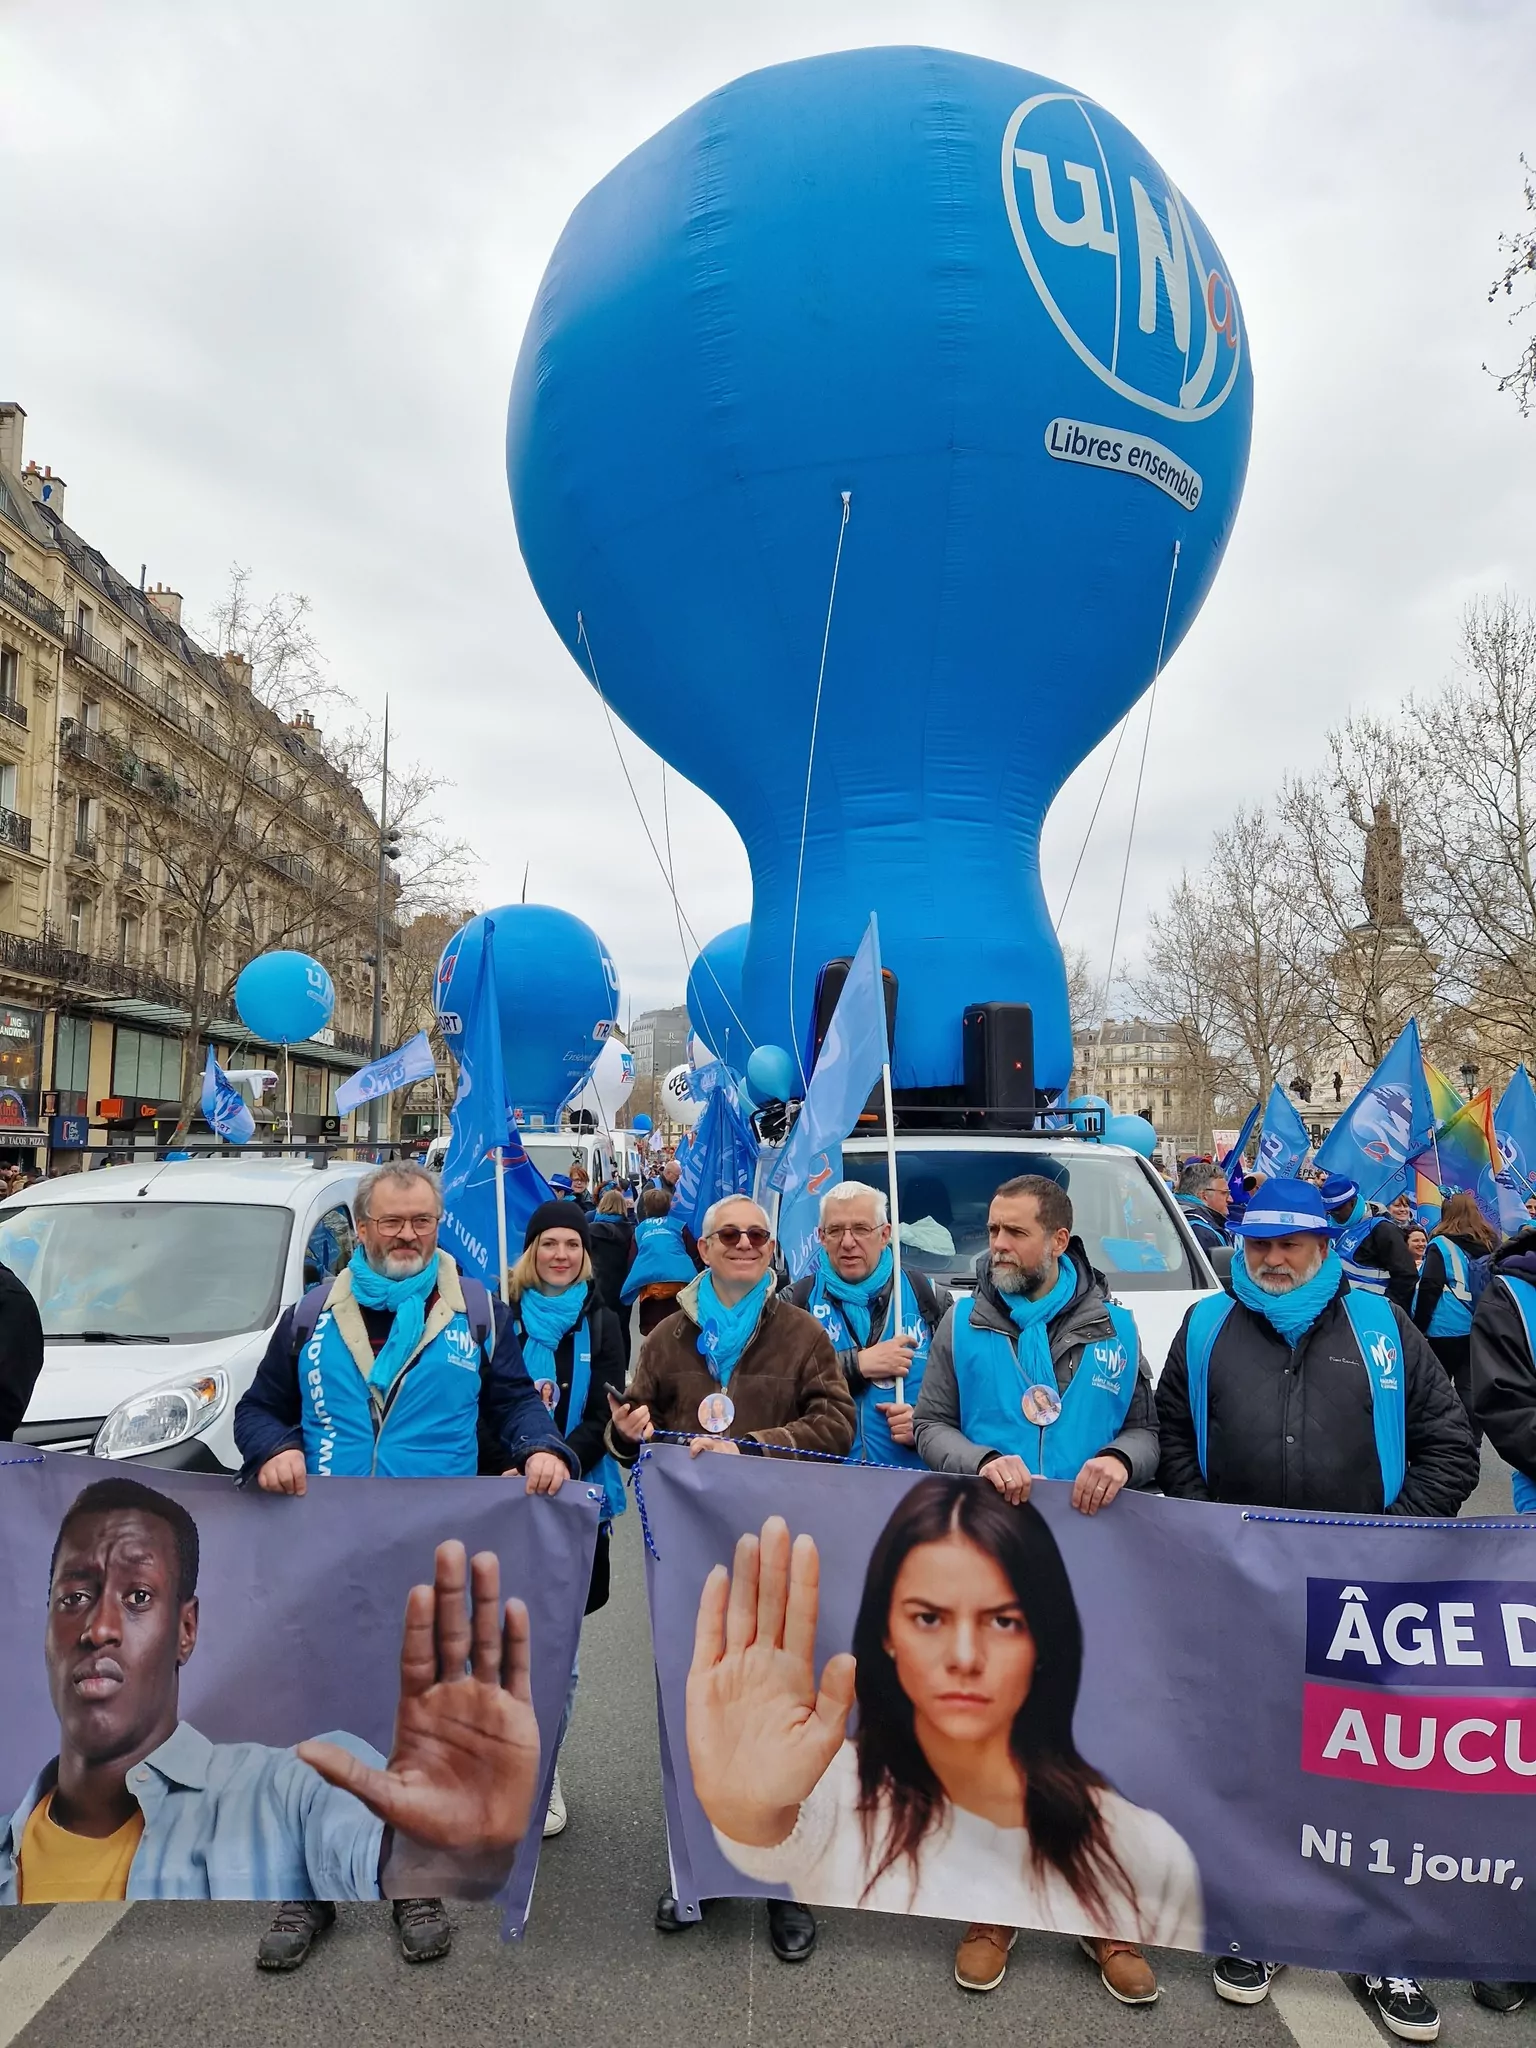 Montgolfière manifestation UNSA, ballon, publicitaire, bleu